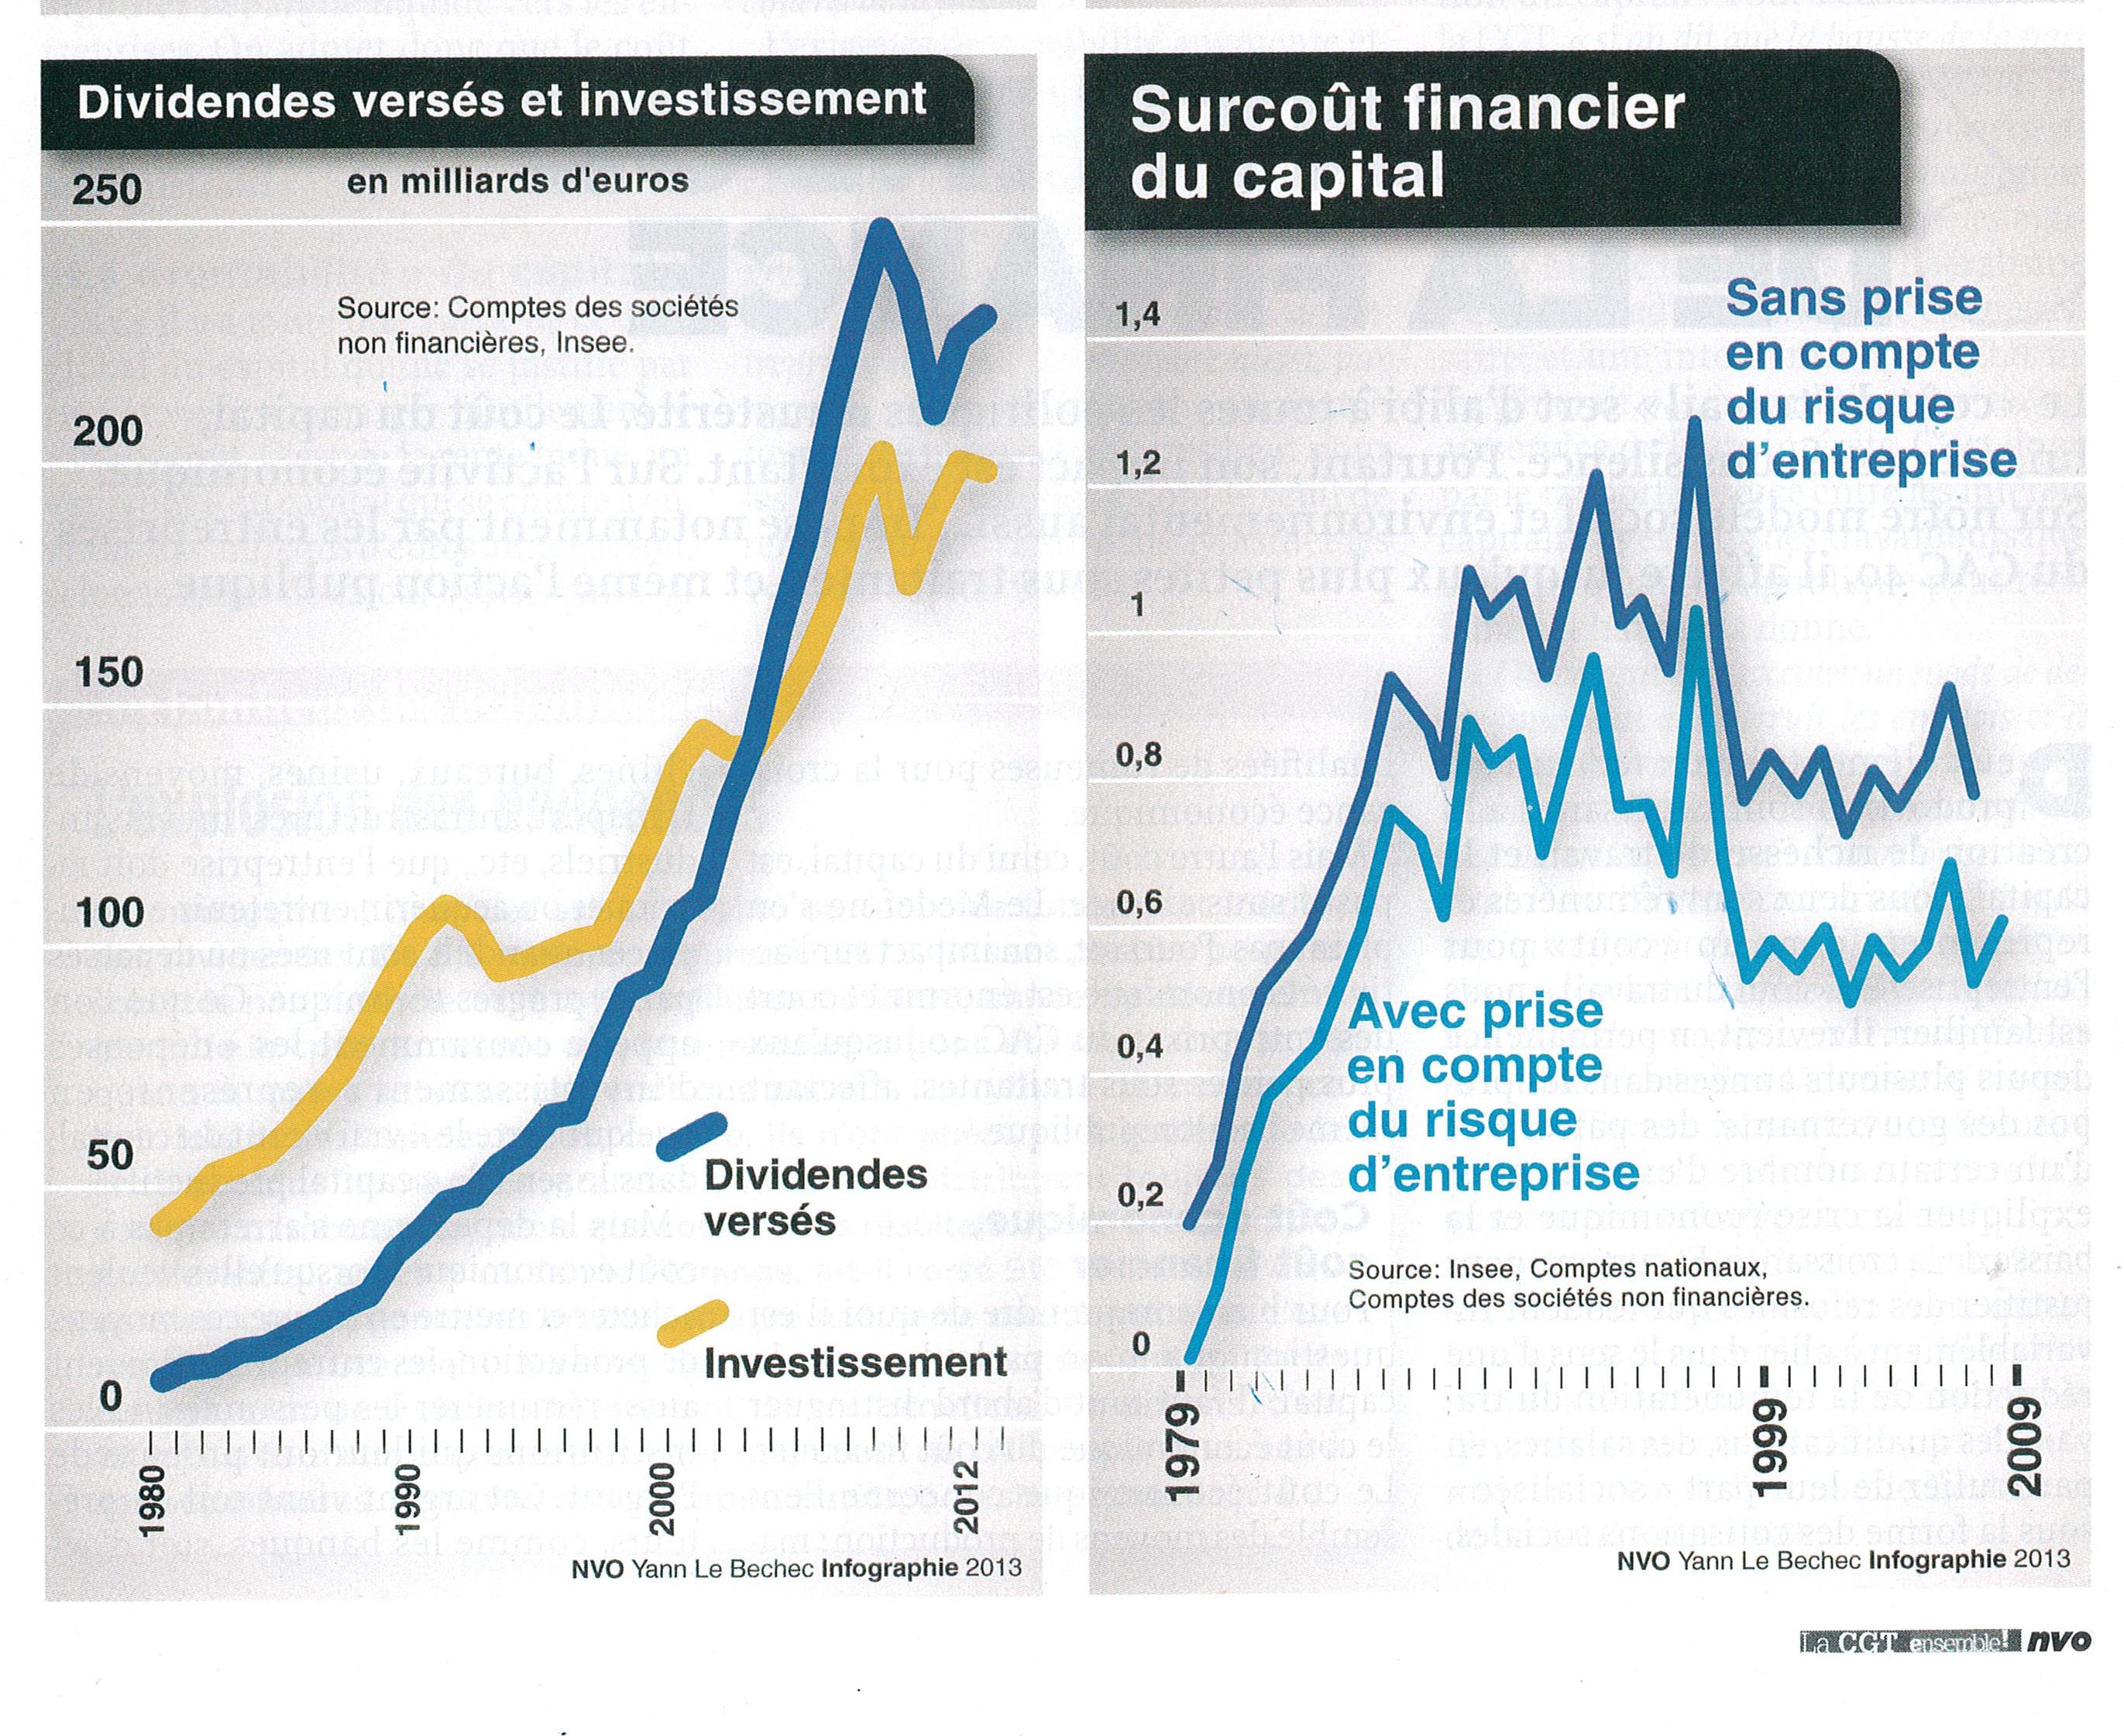 À partil de 2003, les dividendes versés dépassent les investissements